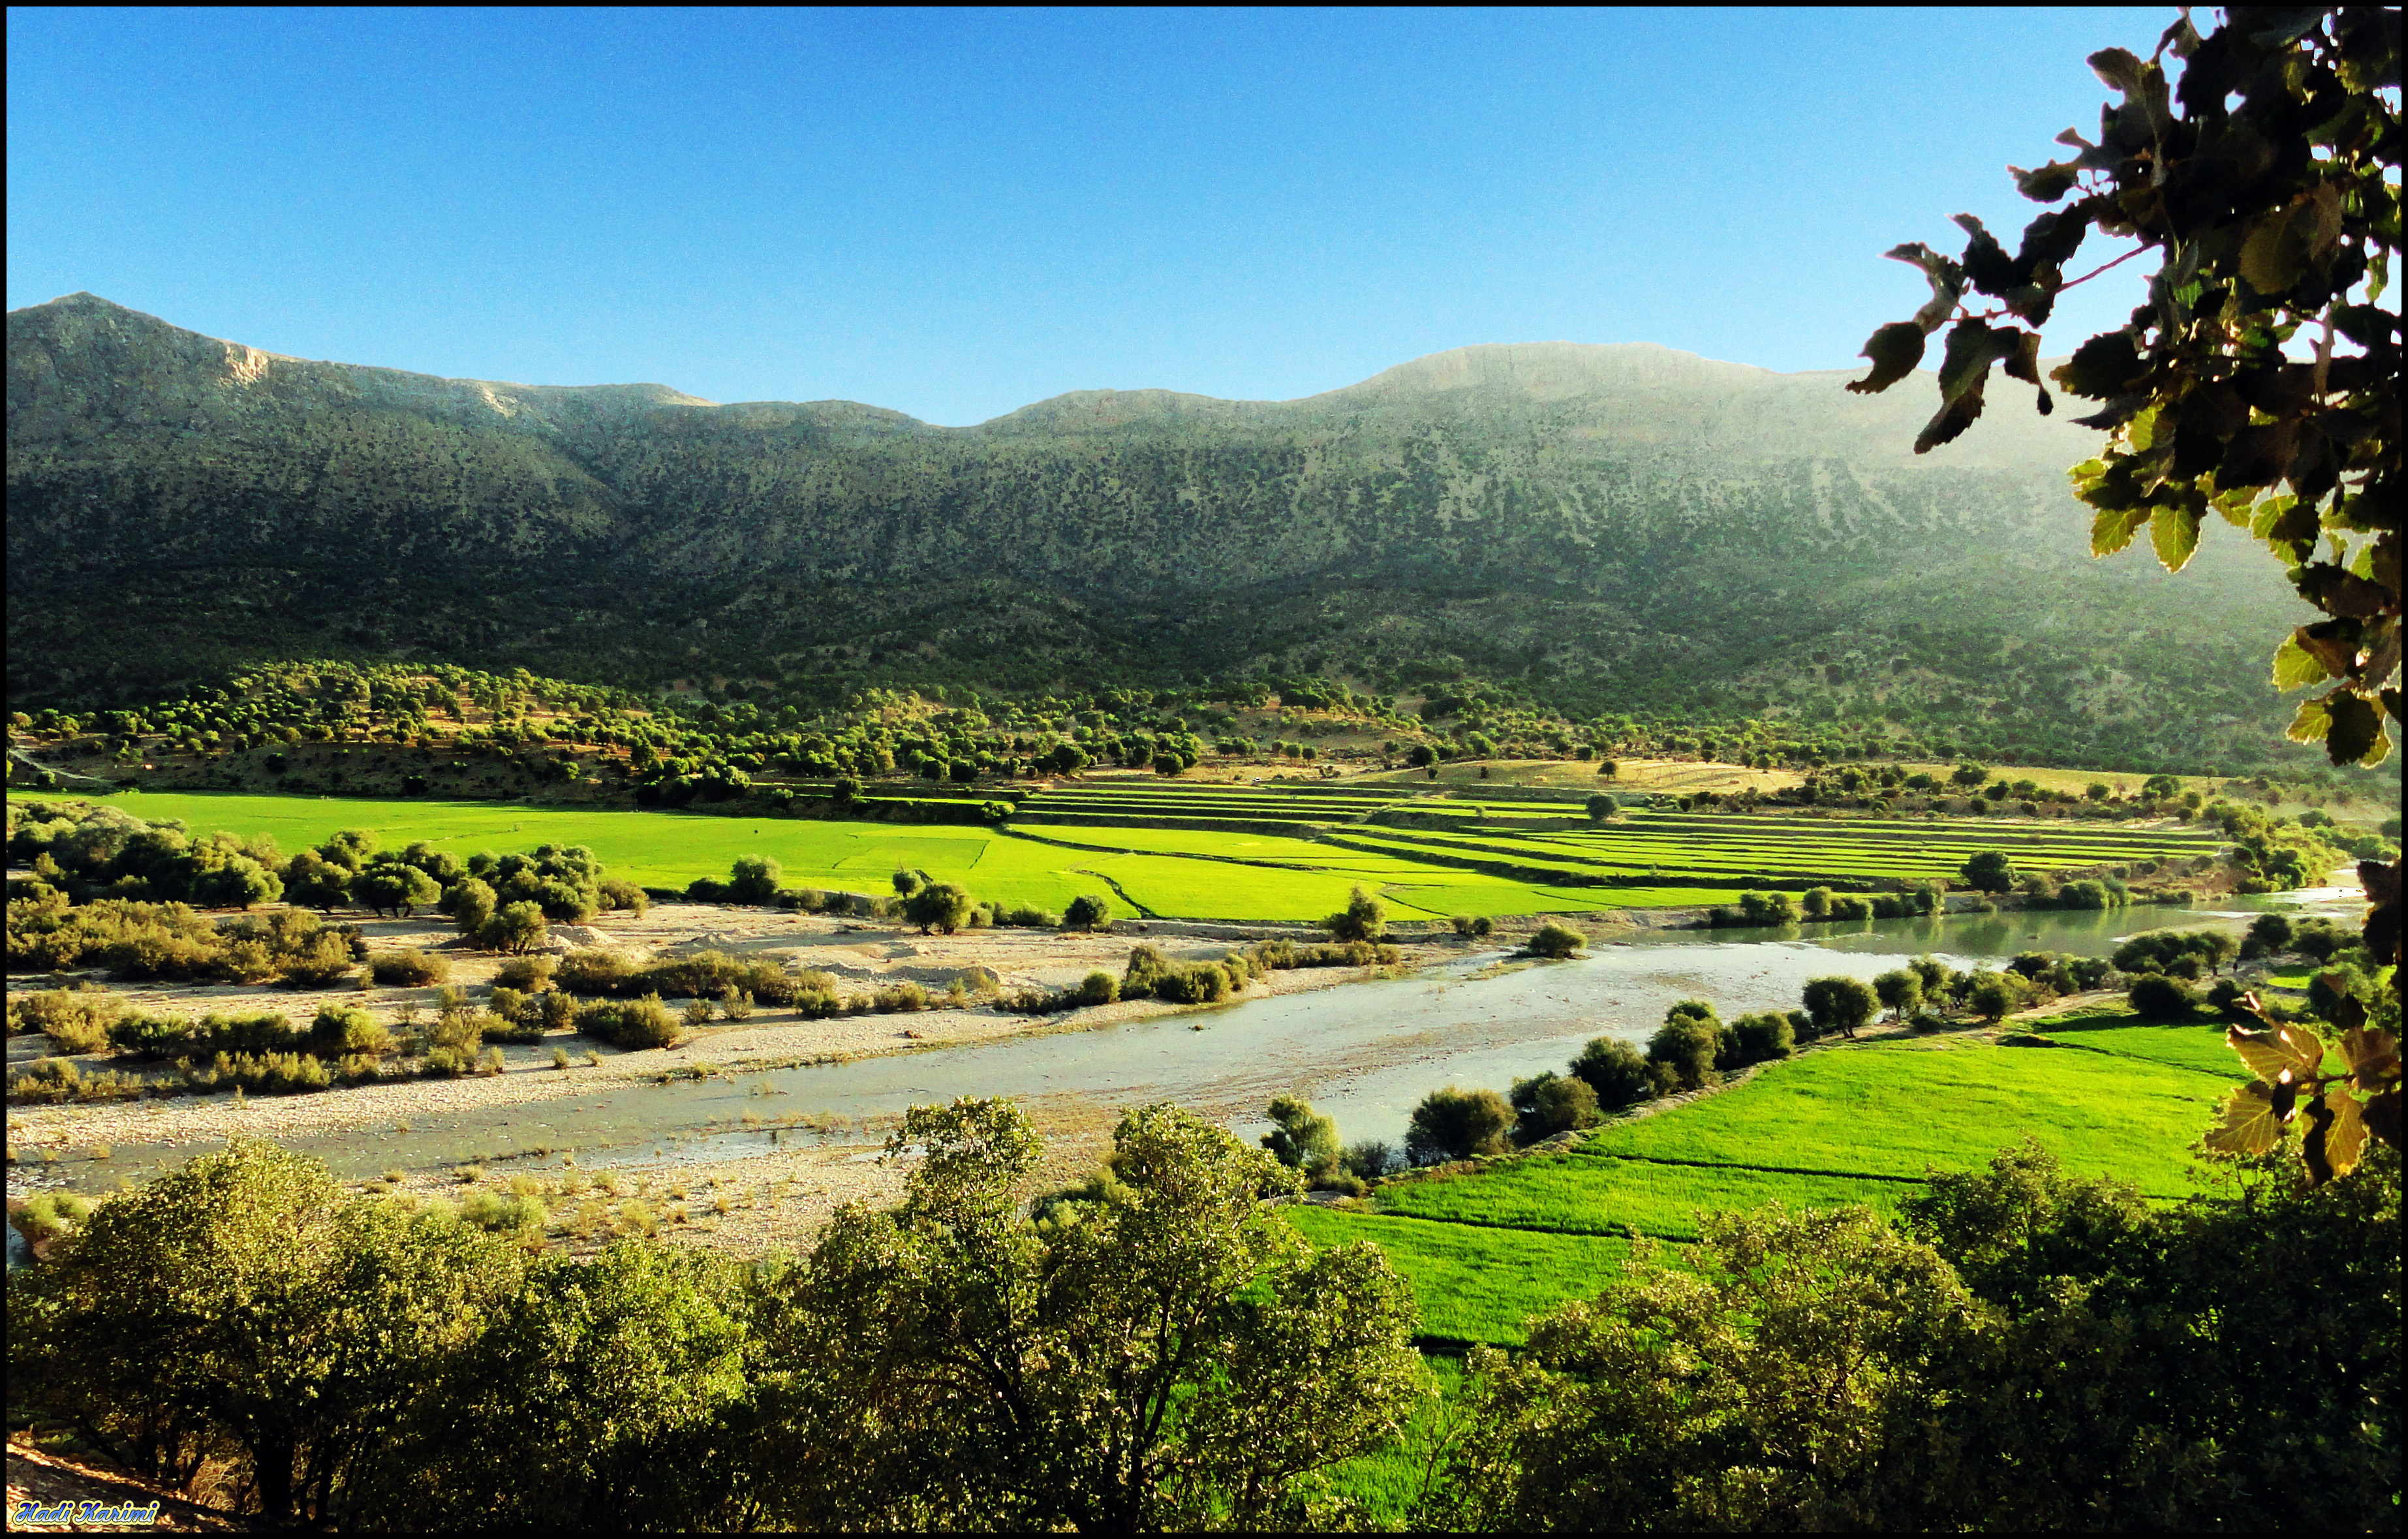 پرونده:Paddies around Kor River, Kamfirouz شالیزارهای اطراف رود کر، کامفیروز  - panoramio.jpg - ویکی‌پدیا، دانشنامهٔ آزاد